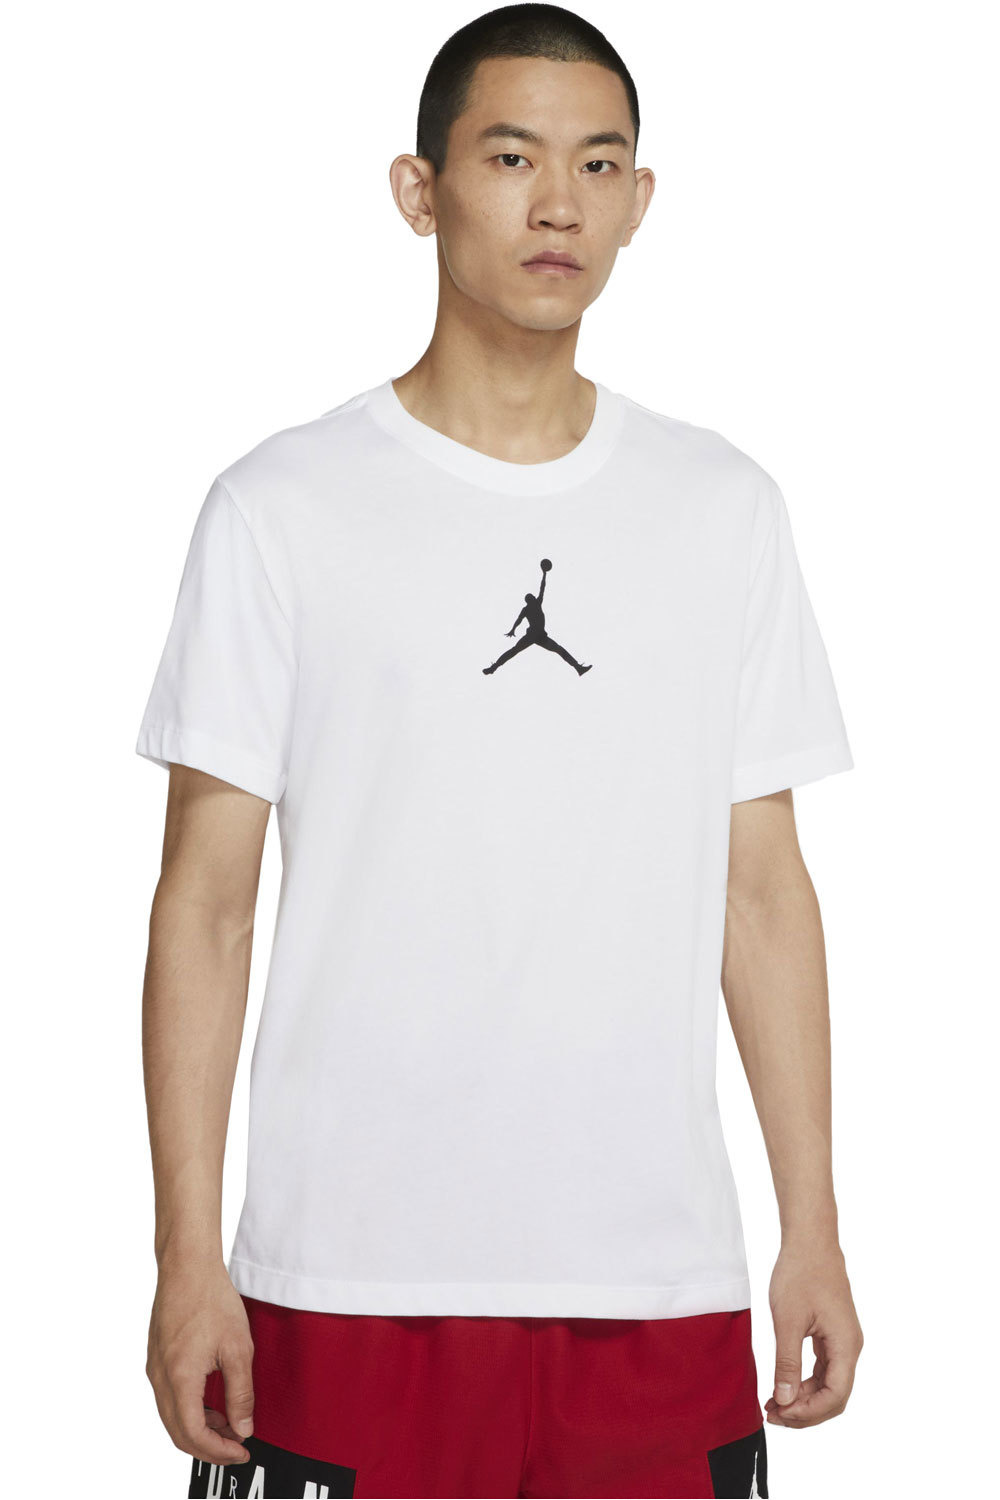 Nike camiseta manga corta hombre JORDAN JUMPMAN 4 vista frontal